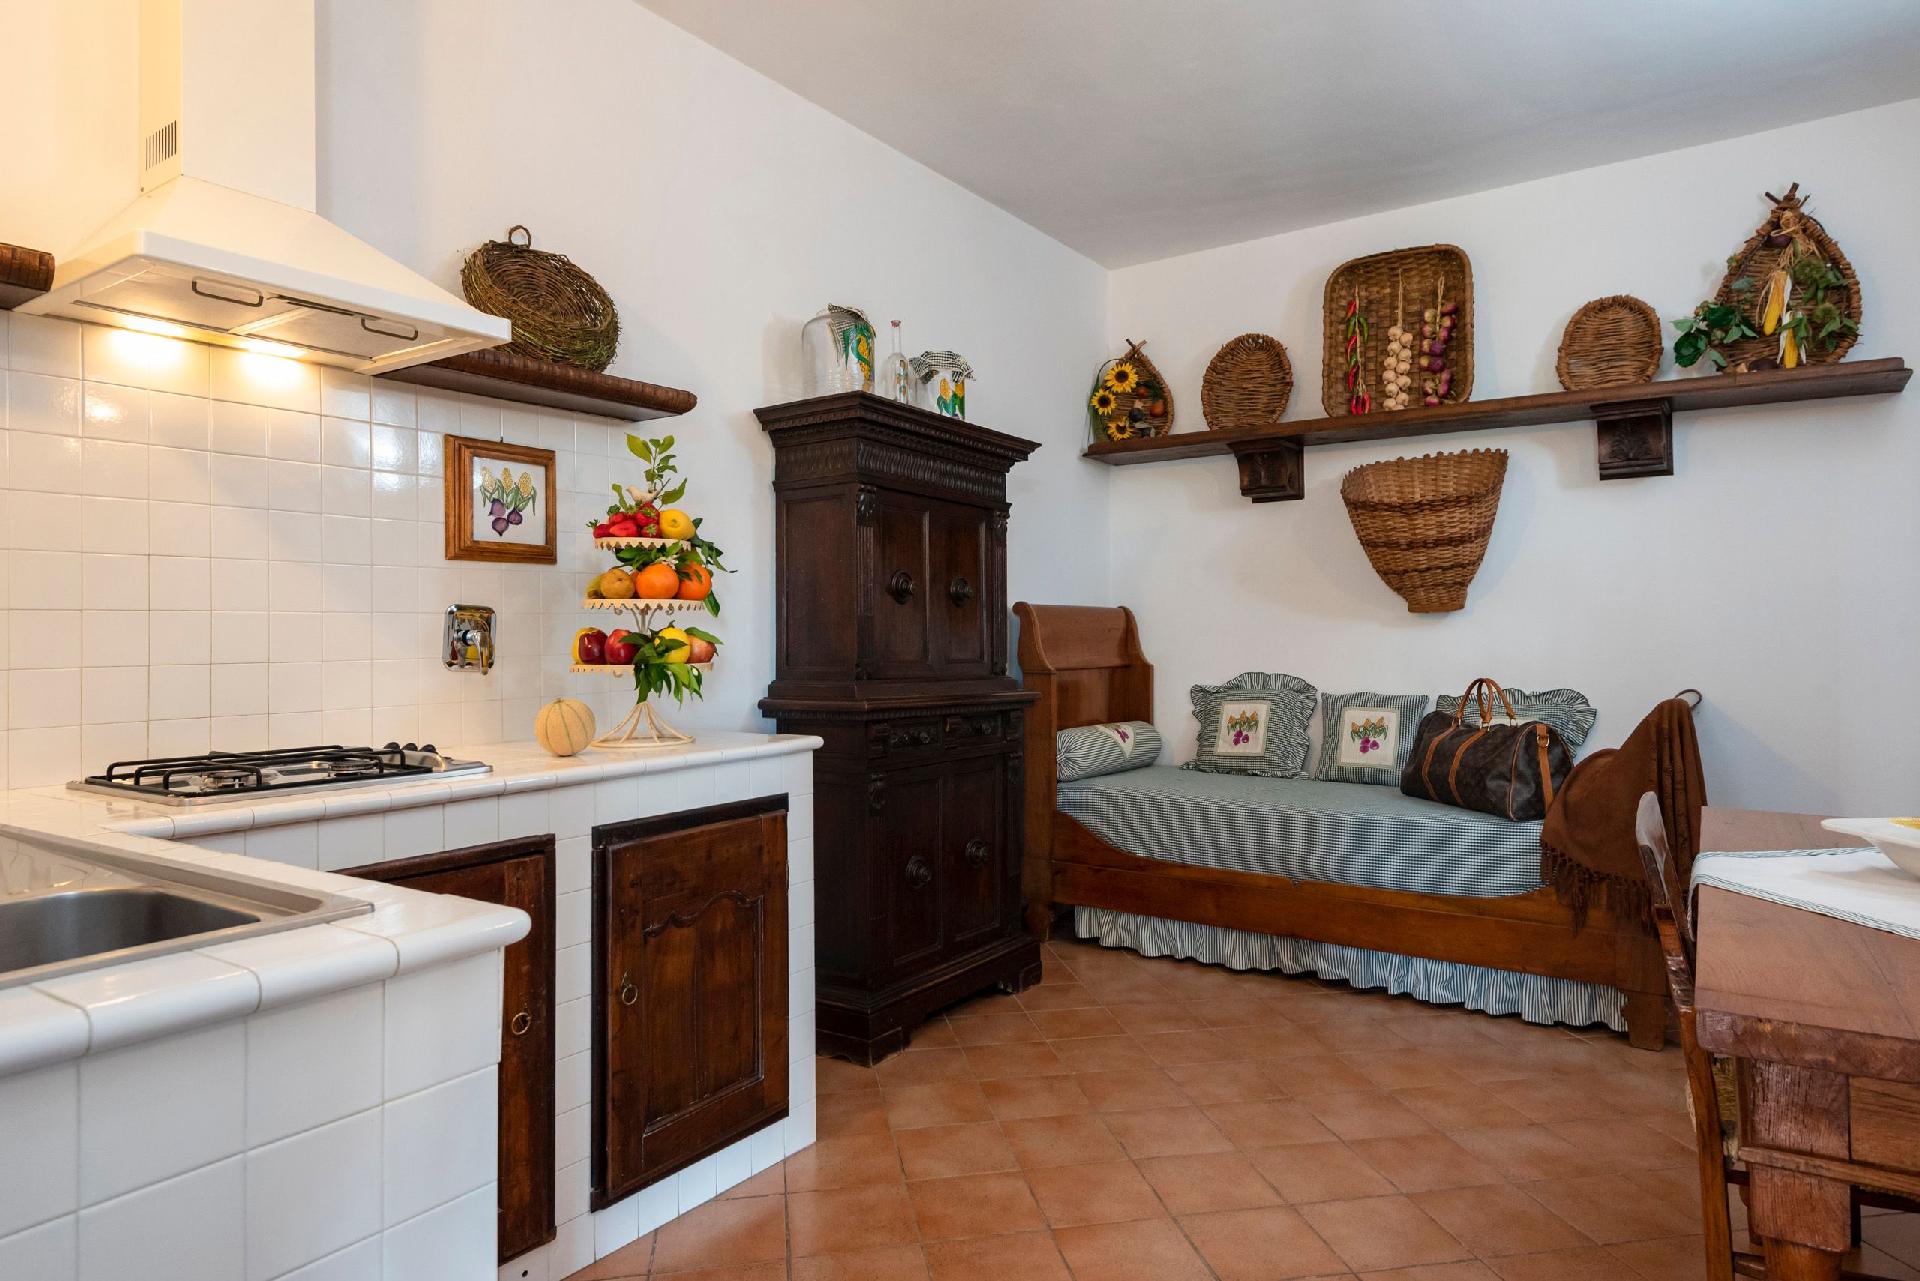 Ferienwohnung für 2 Personen ca. 35 m² i Bauernhof in Italien